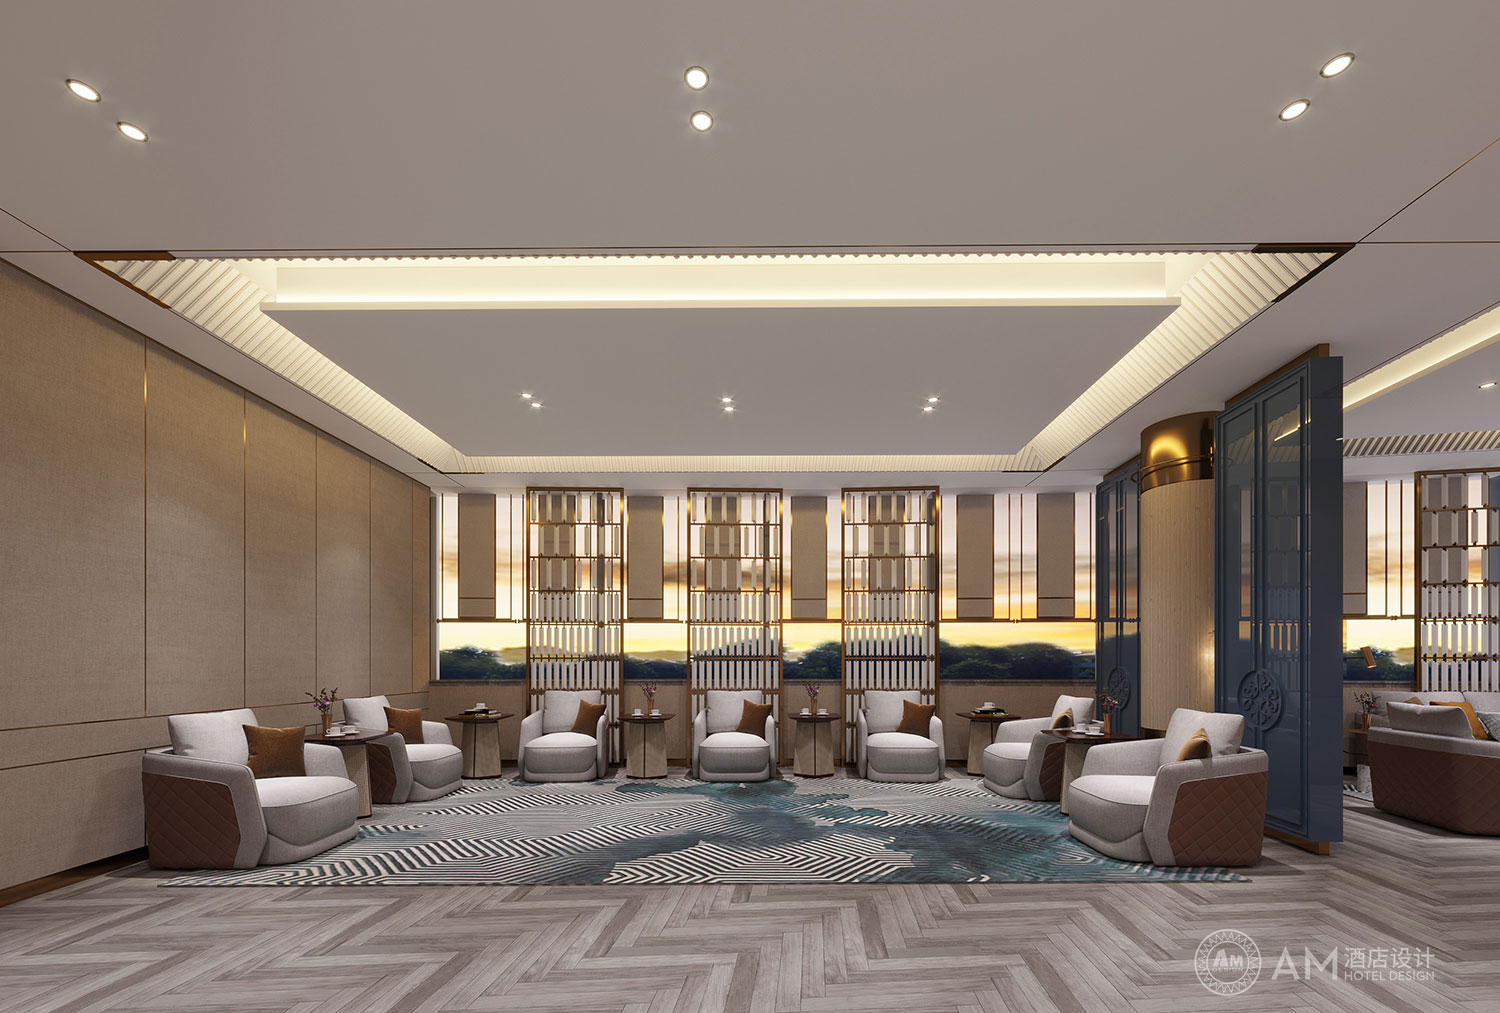 AM DESIGN | Design of banquet hall rest area of Cangzhou Bohai Hotel